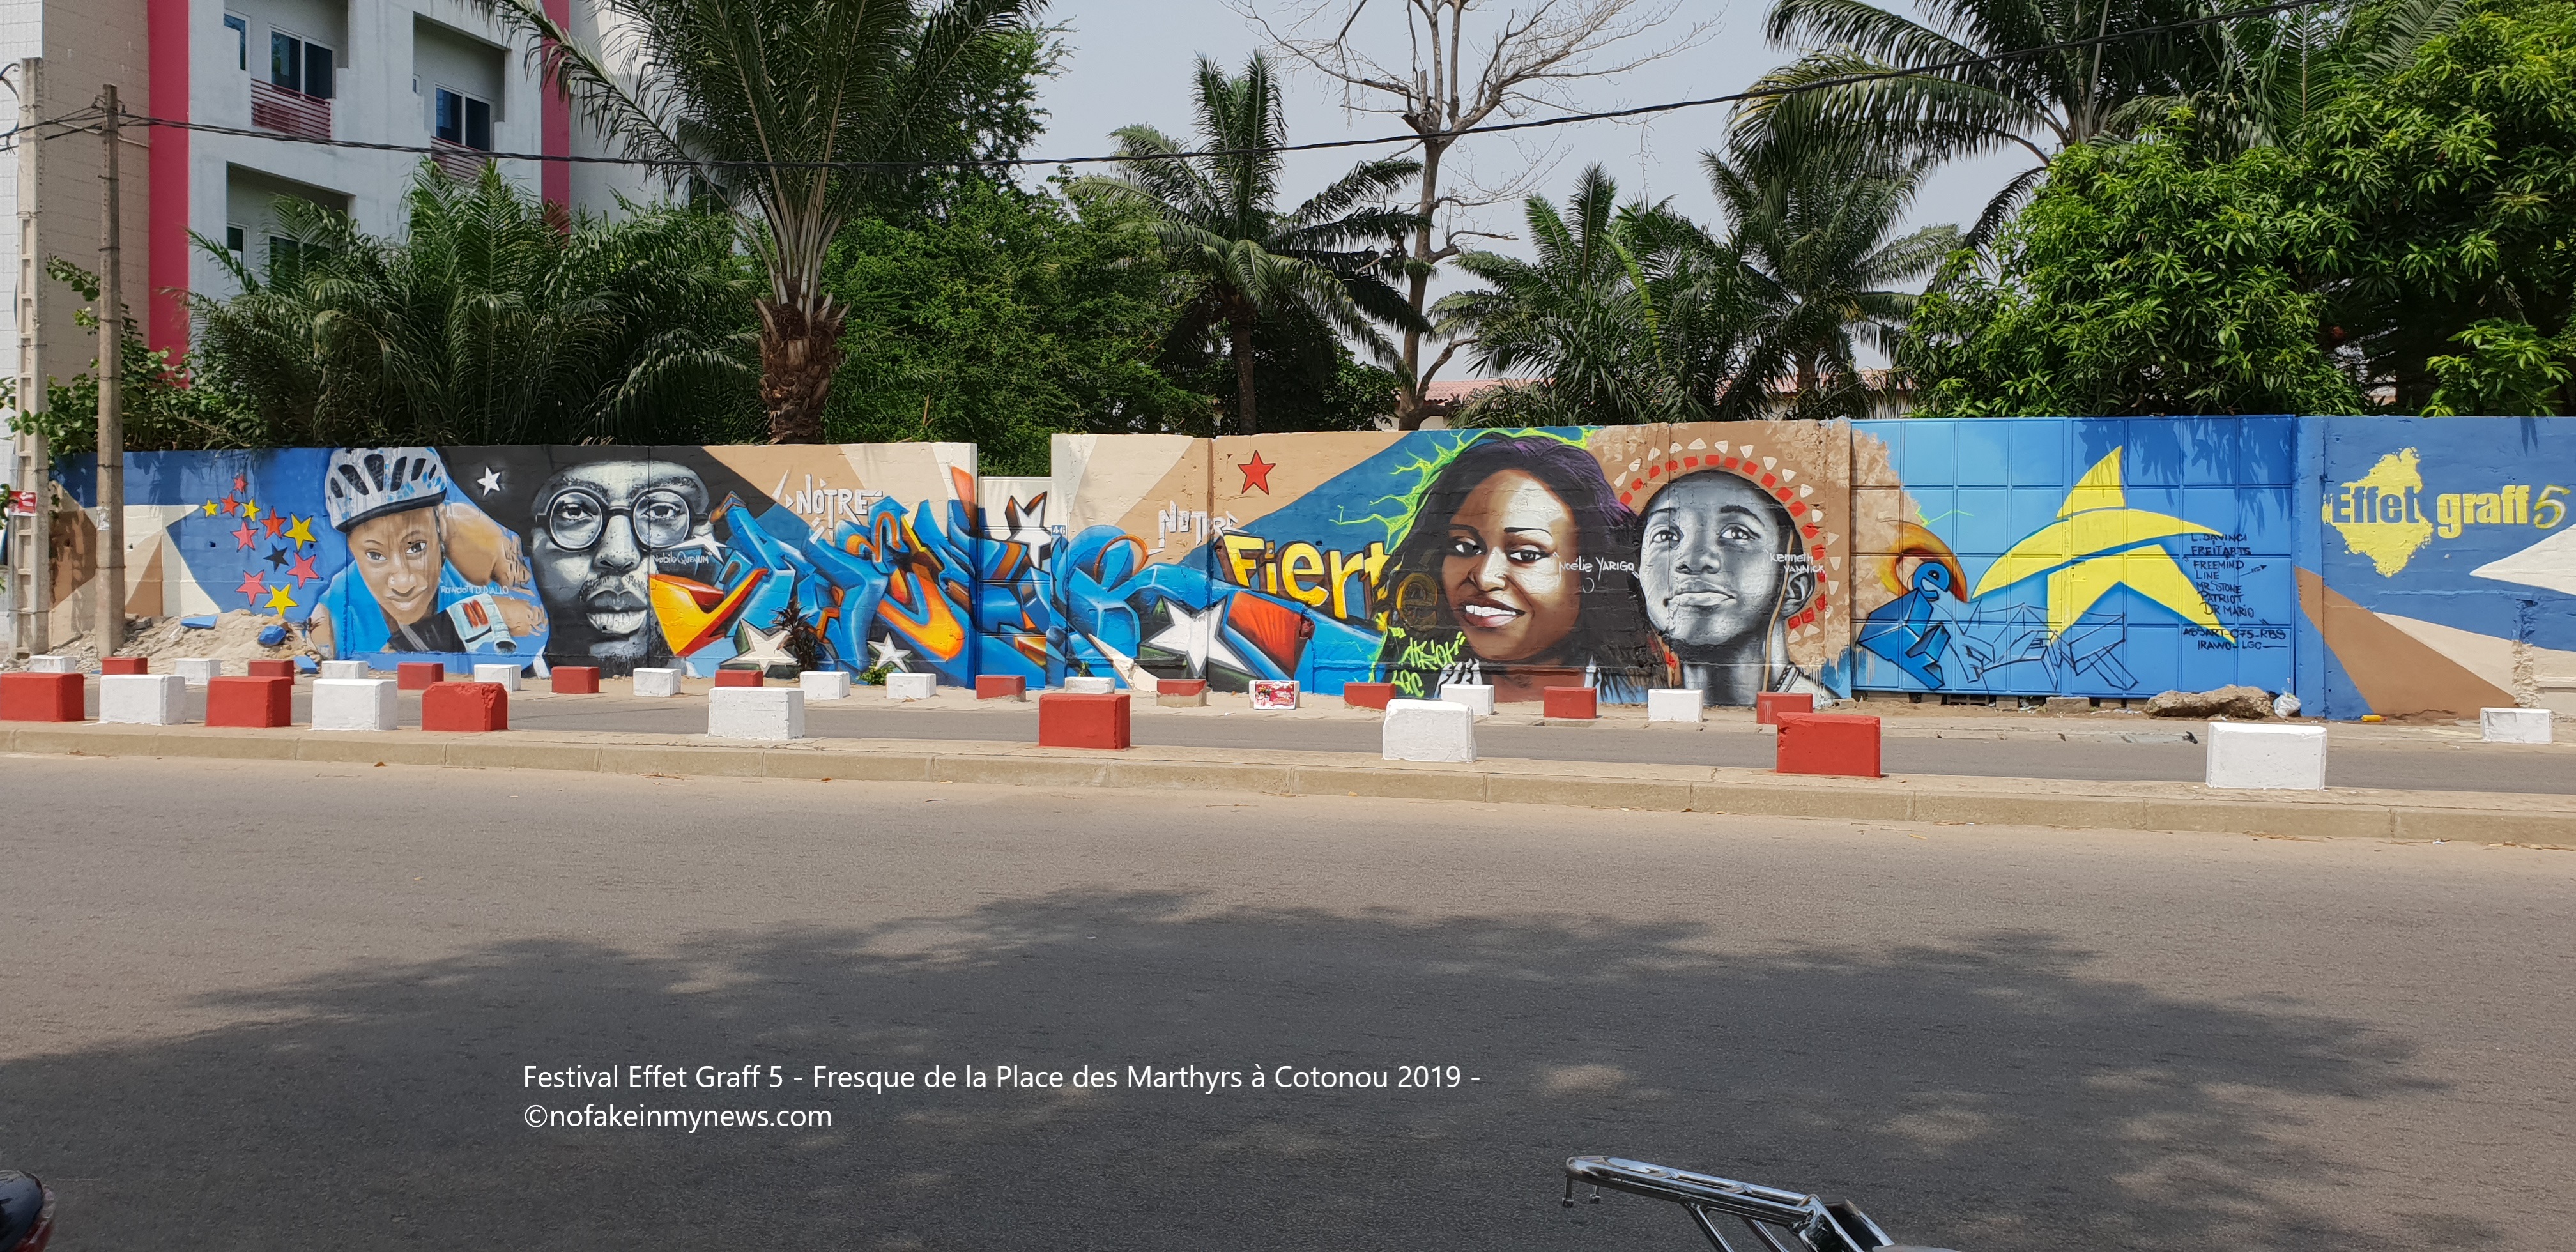 Festival Effet Graff 5 - Fresque de la Place des Marthyrs à Cotonou 2019 - ©nofakeinmynews